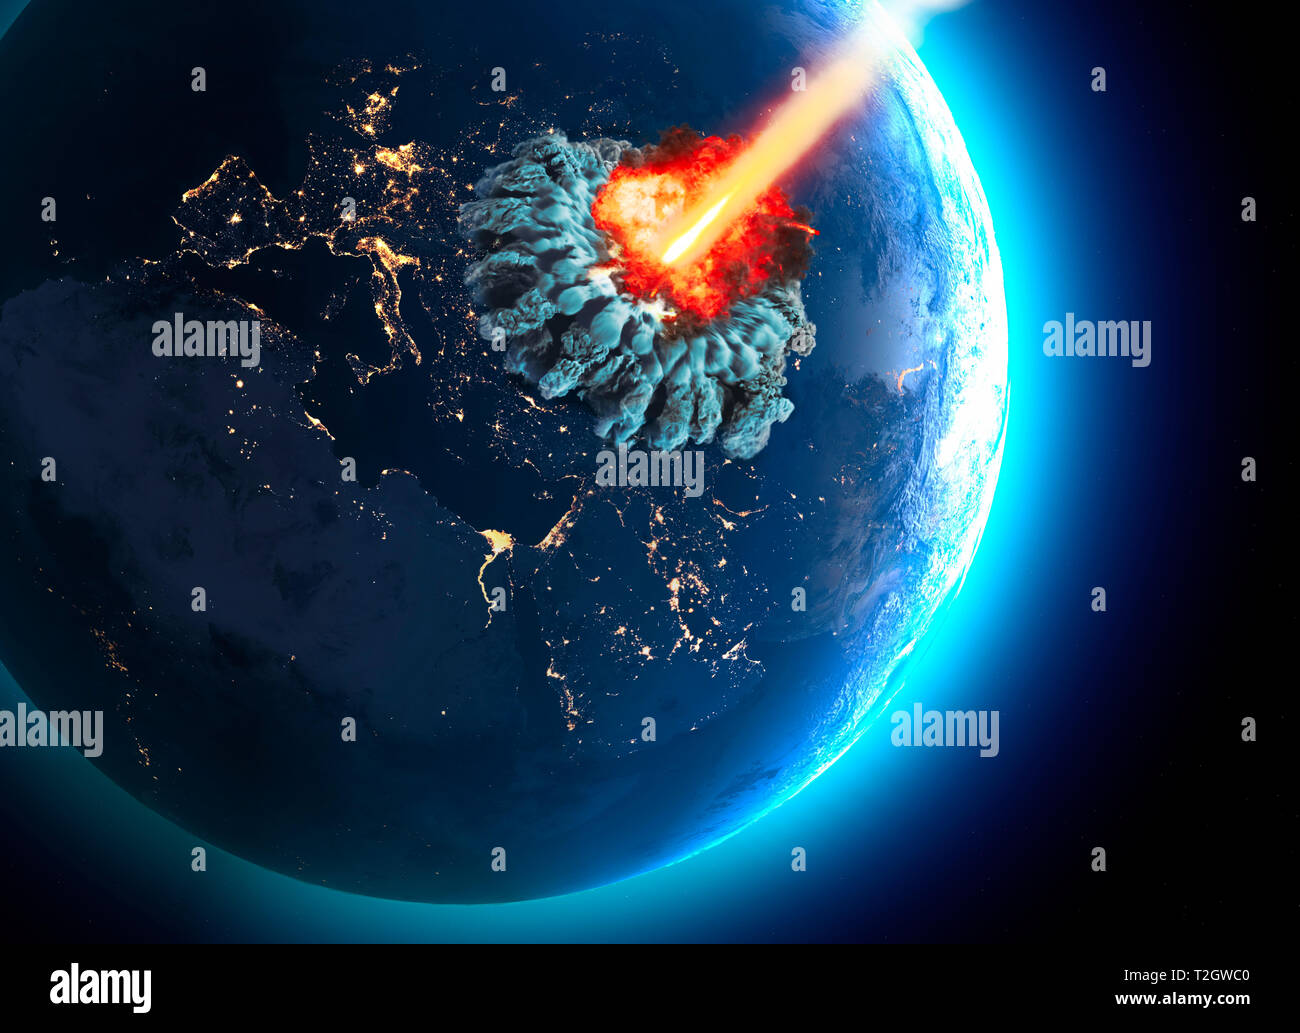 Les météorites qui frappent la terre. Explosion, cataclysme de la fin du monde. L'extinction à l'échelle mondiale. La bombe nucléaire. Le rendu 3D Banque D'Images